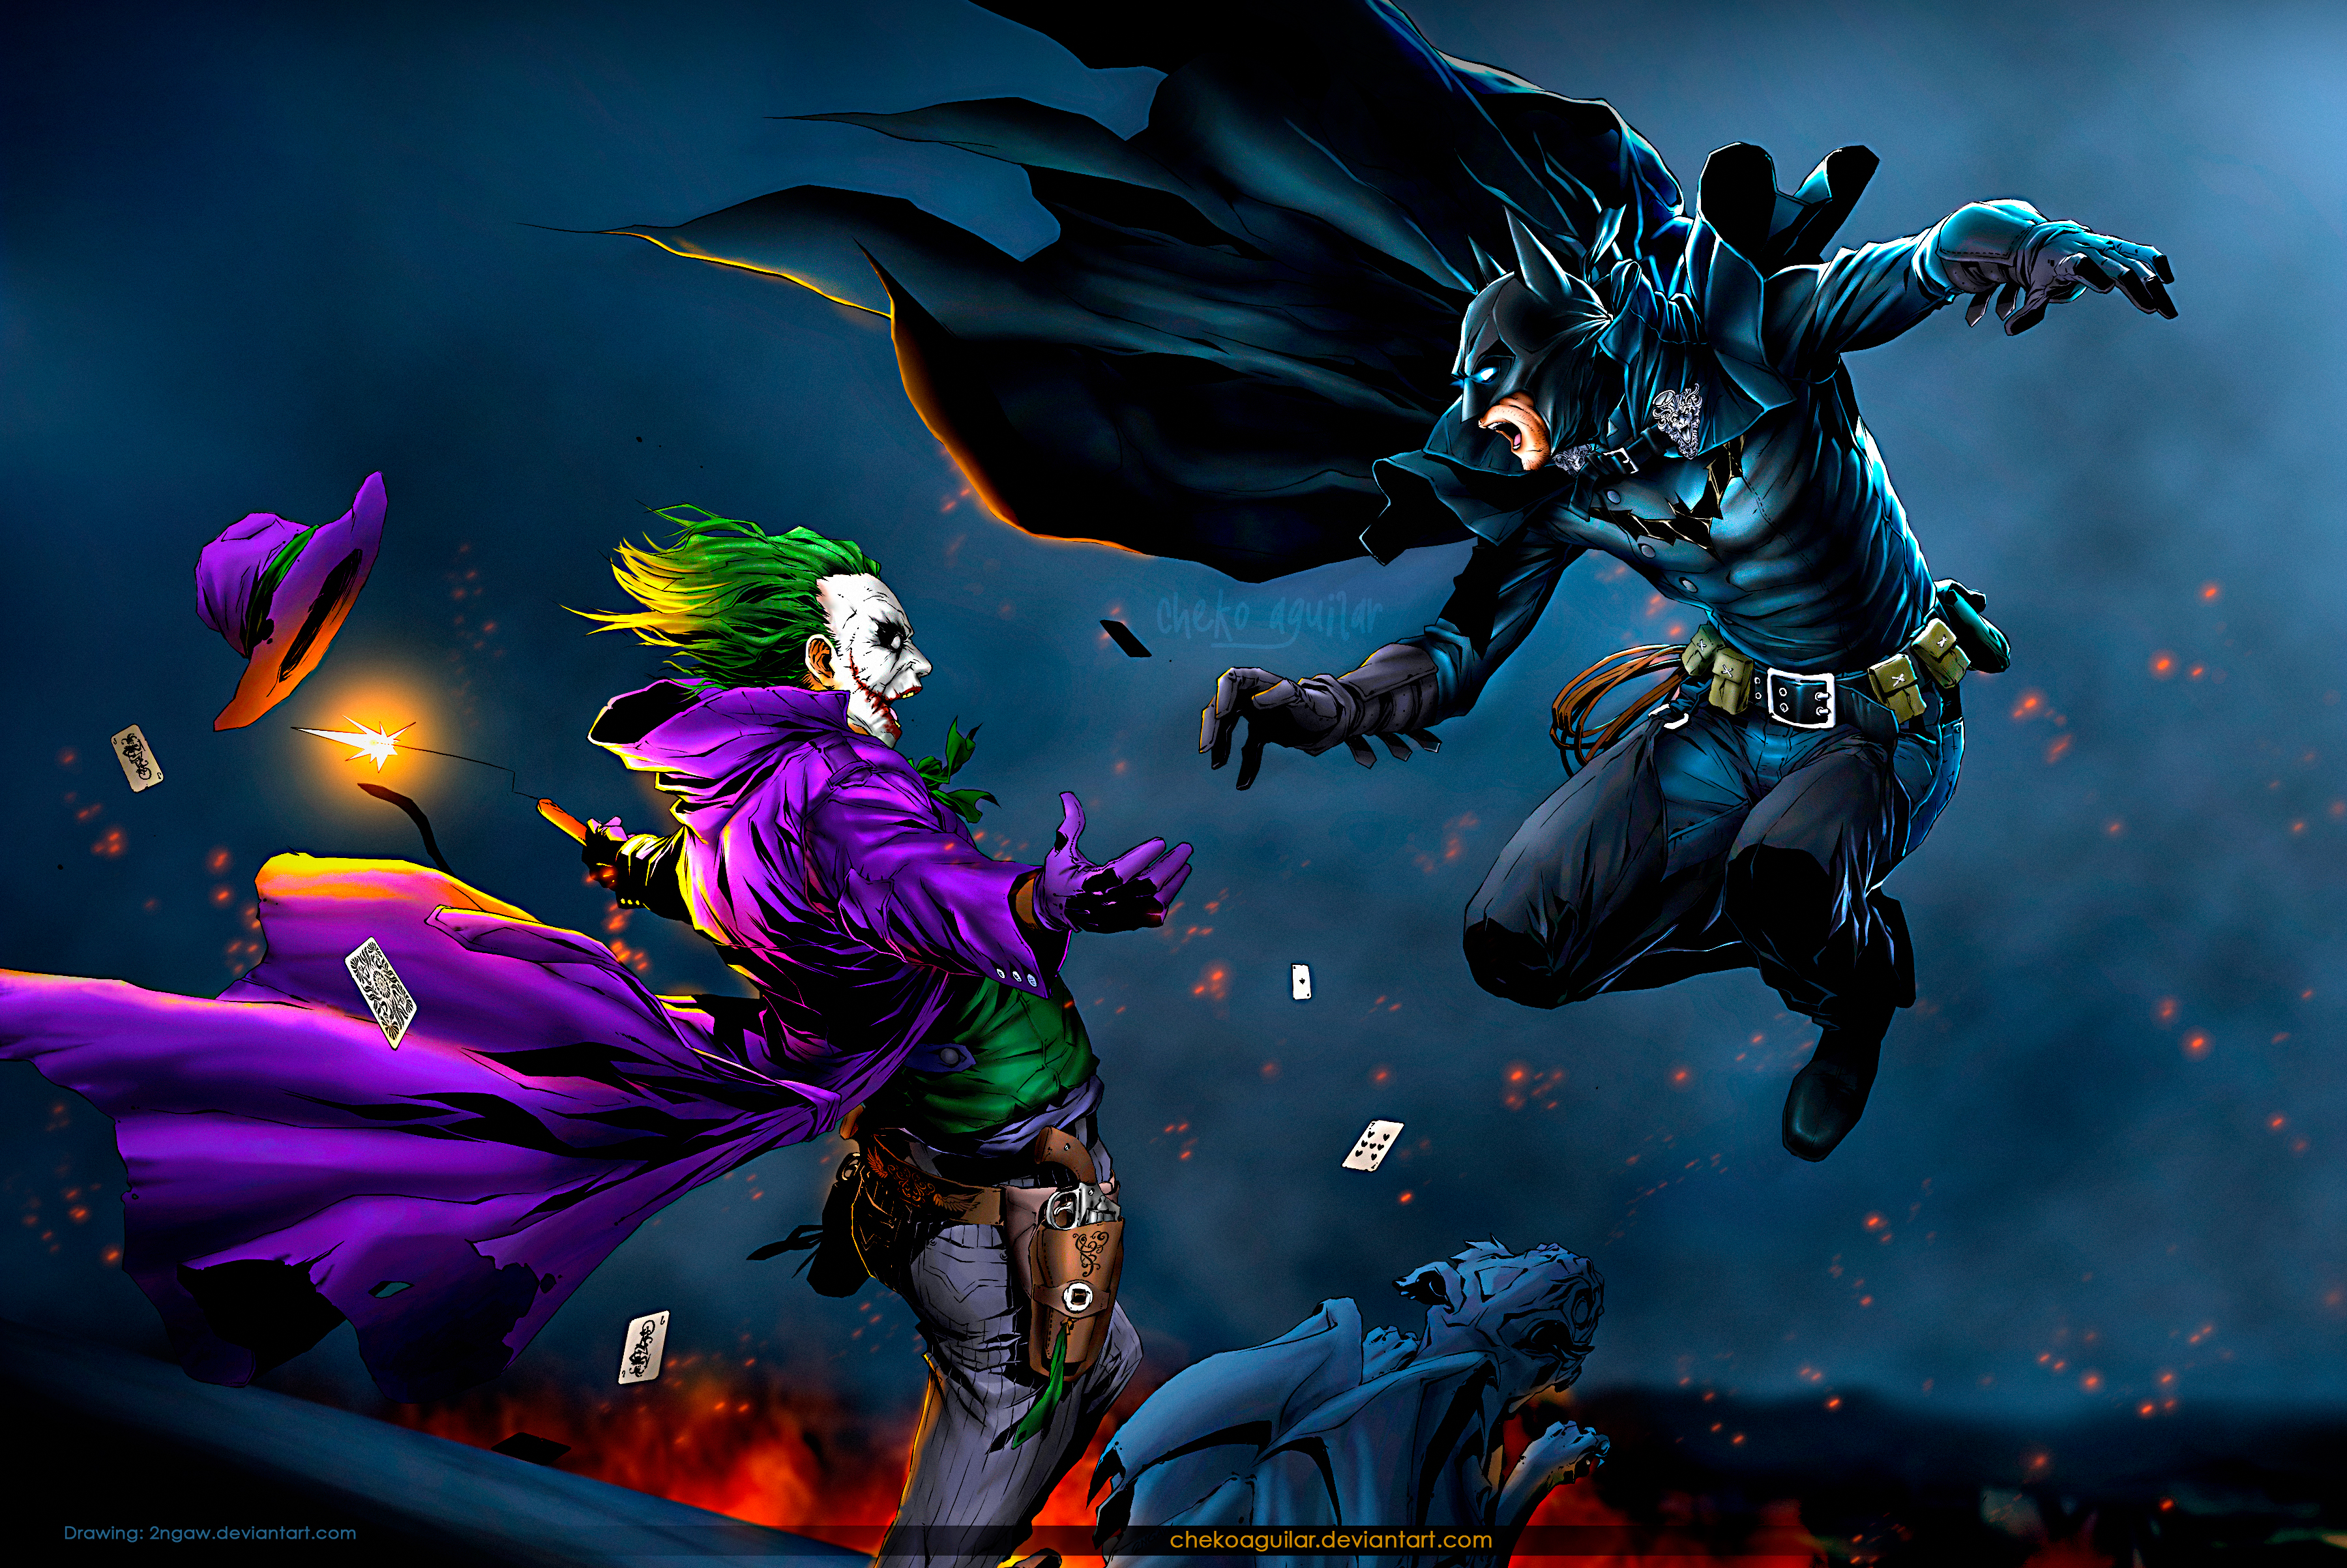 Batman vs Joker (Old West) by ChekoAguilar on DeviantArt